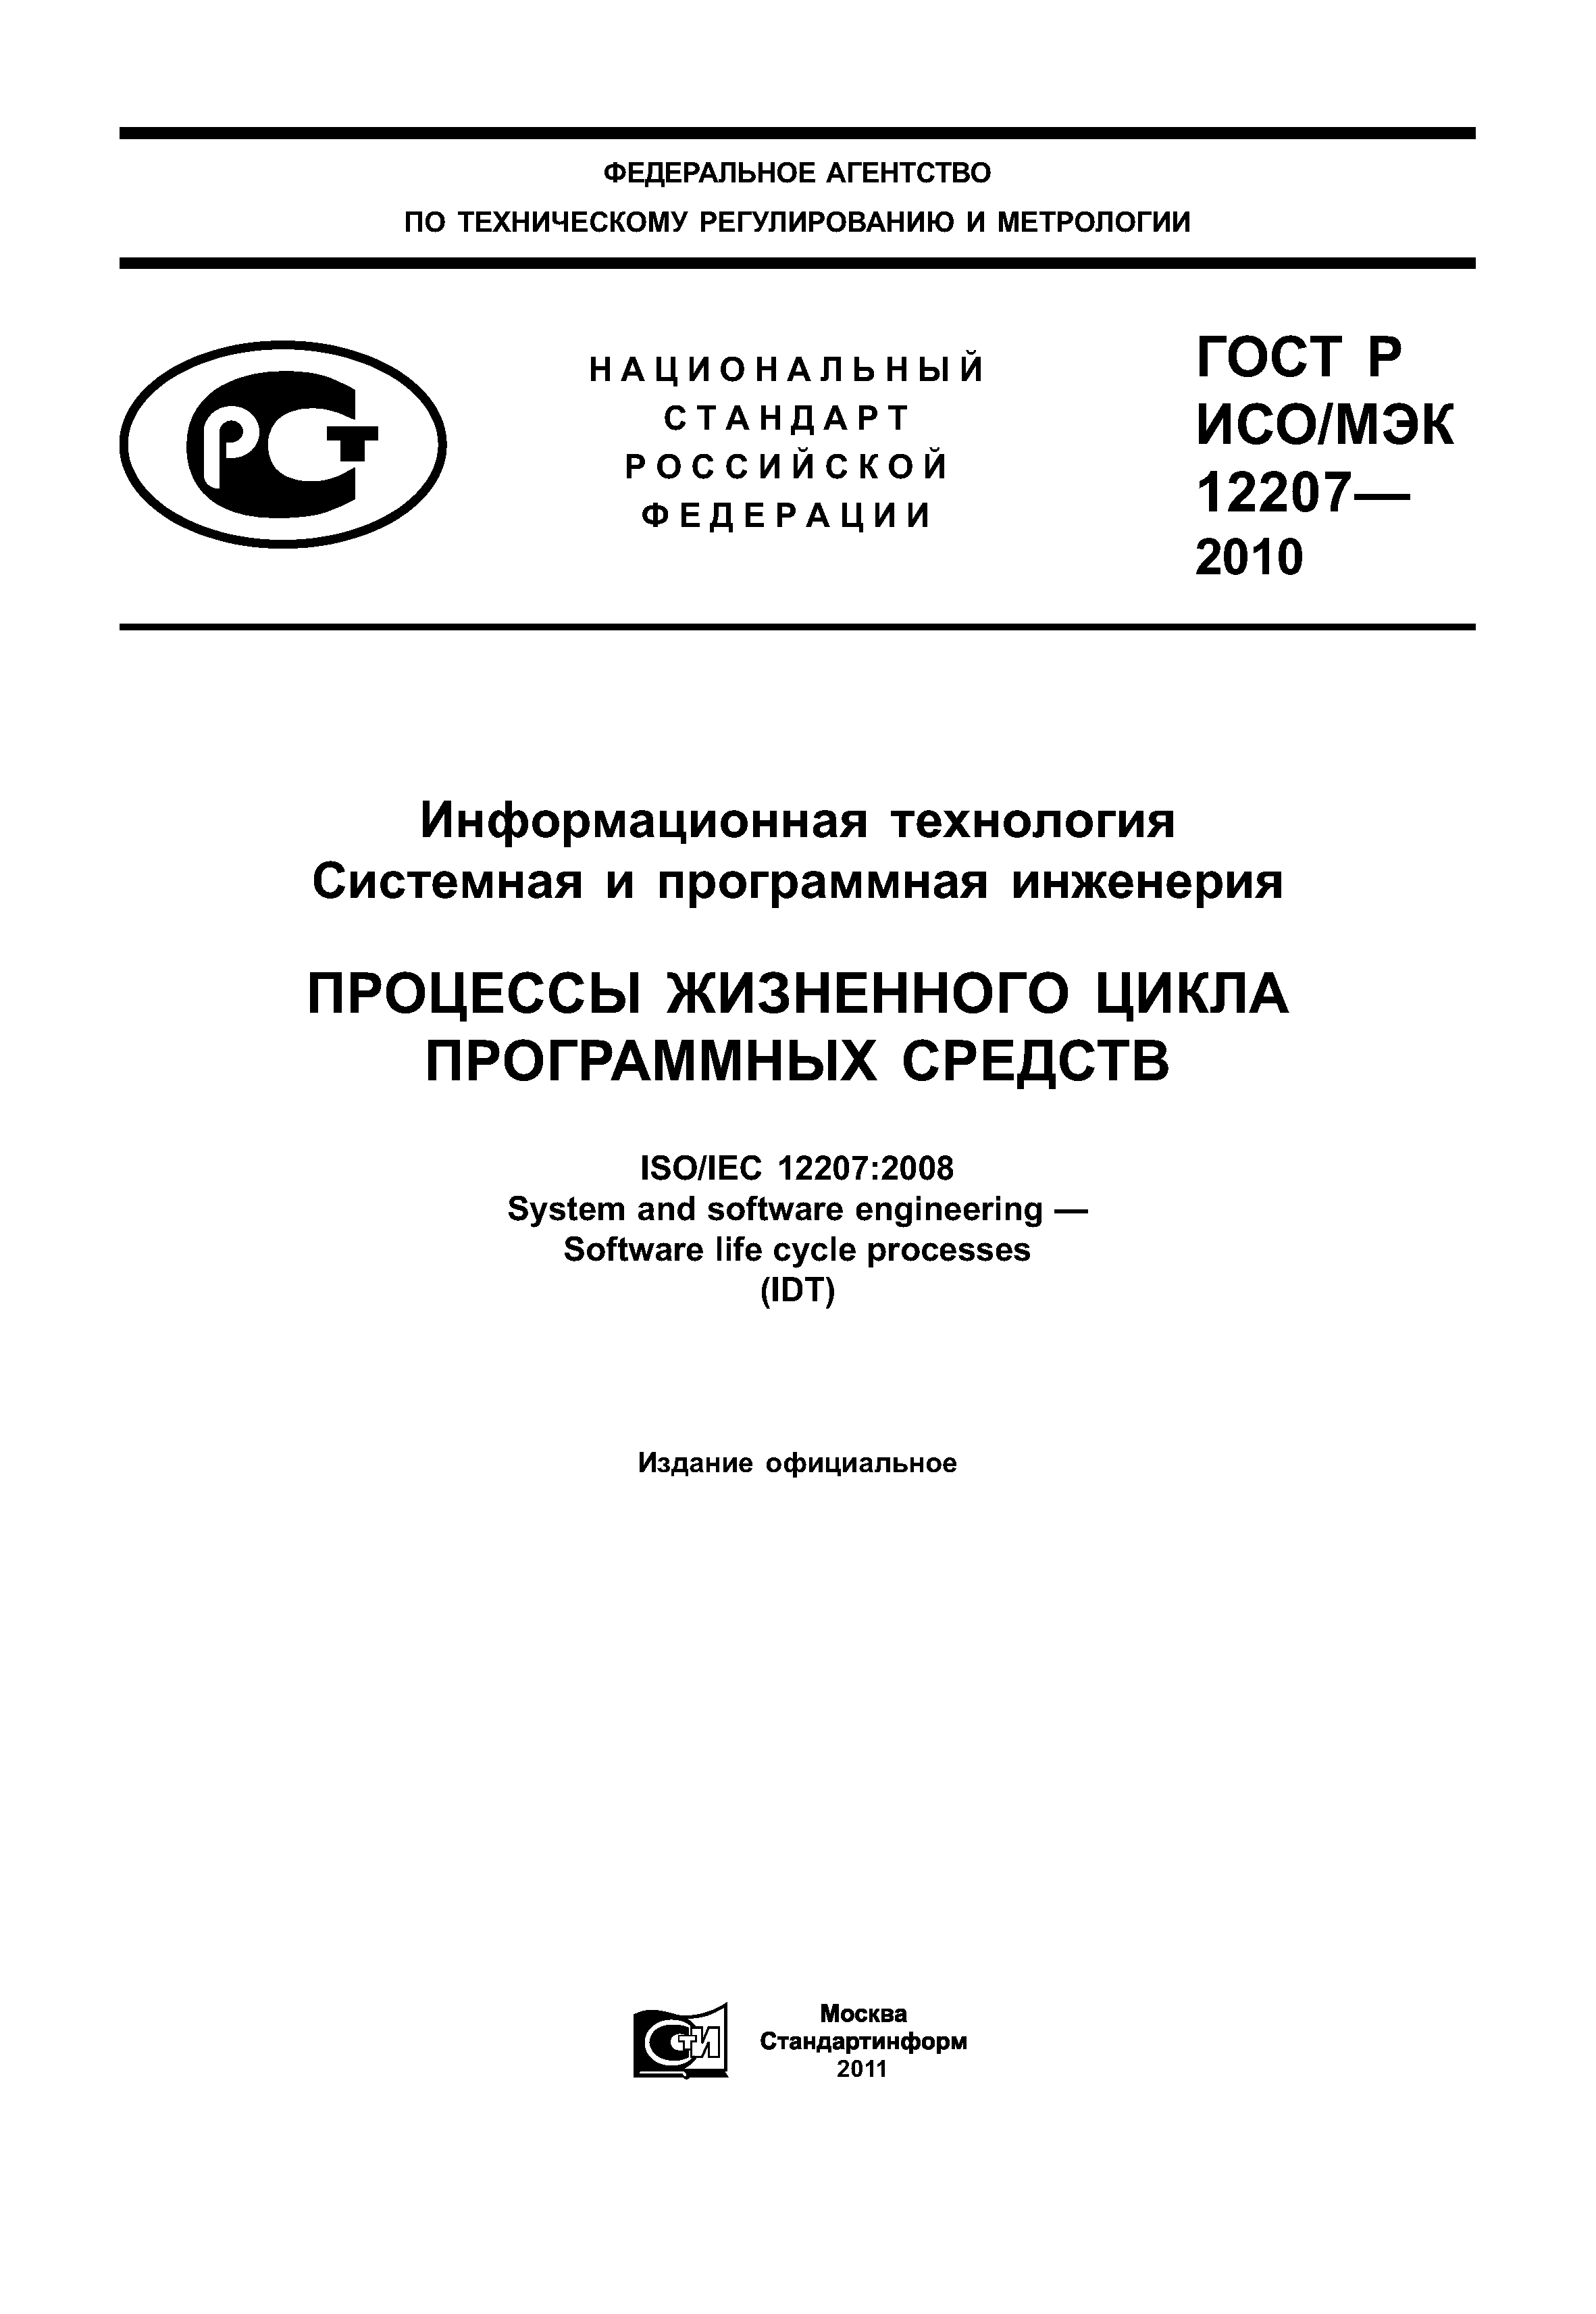 ГОСТ Р ИСО/МЭК 12207-2010